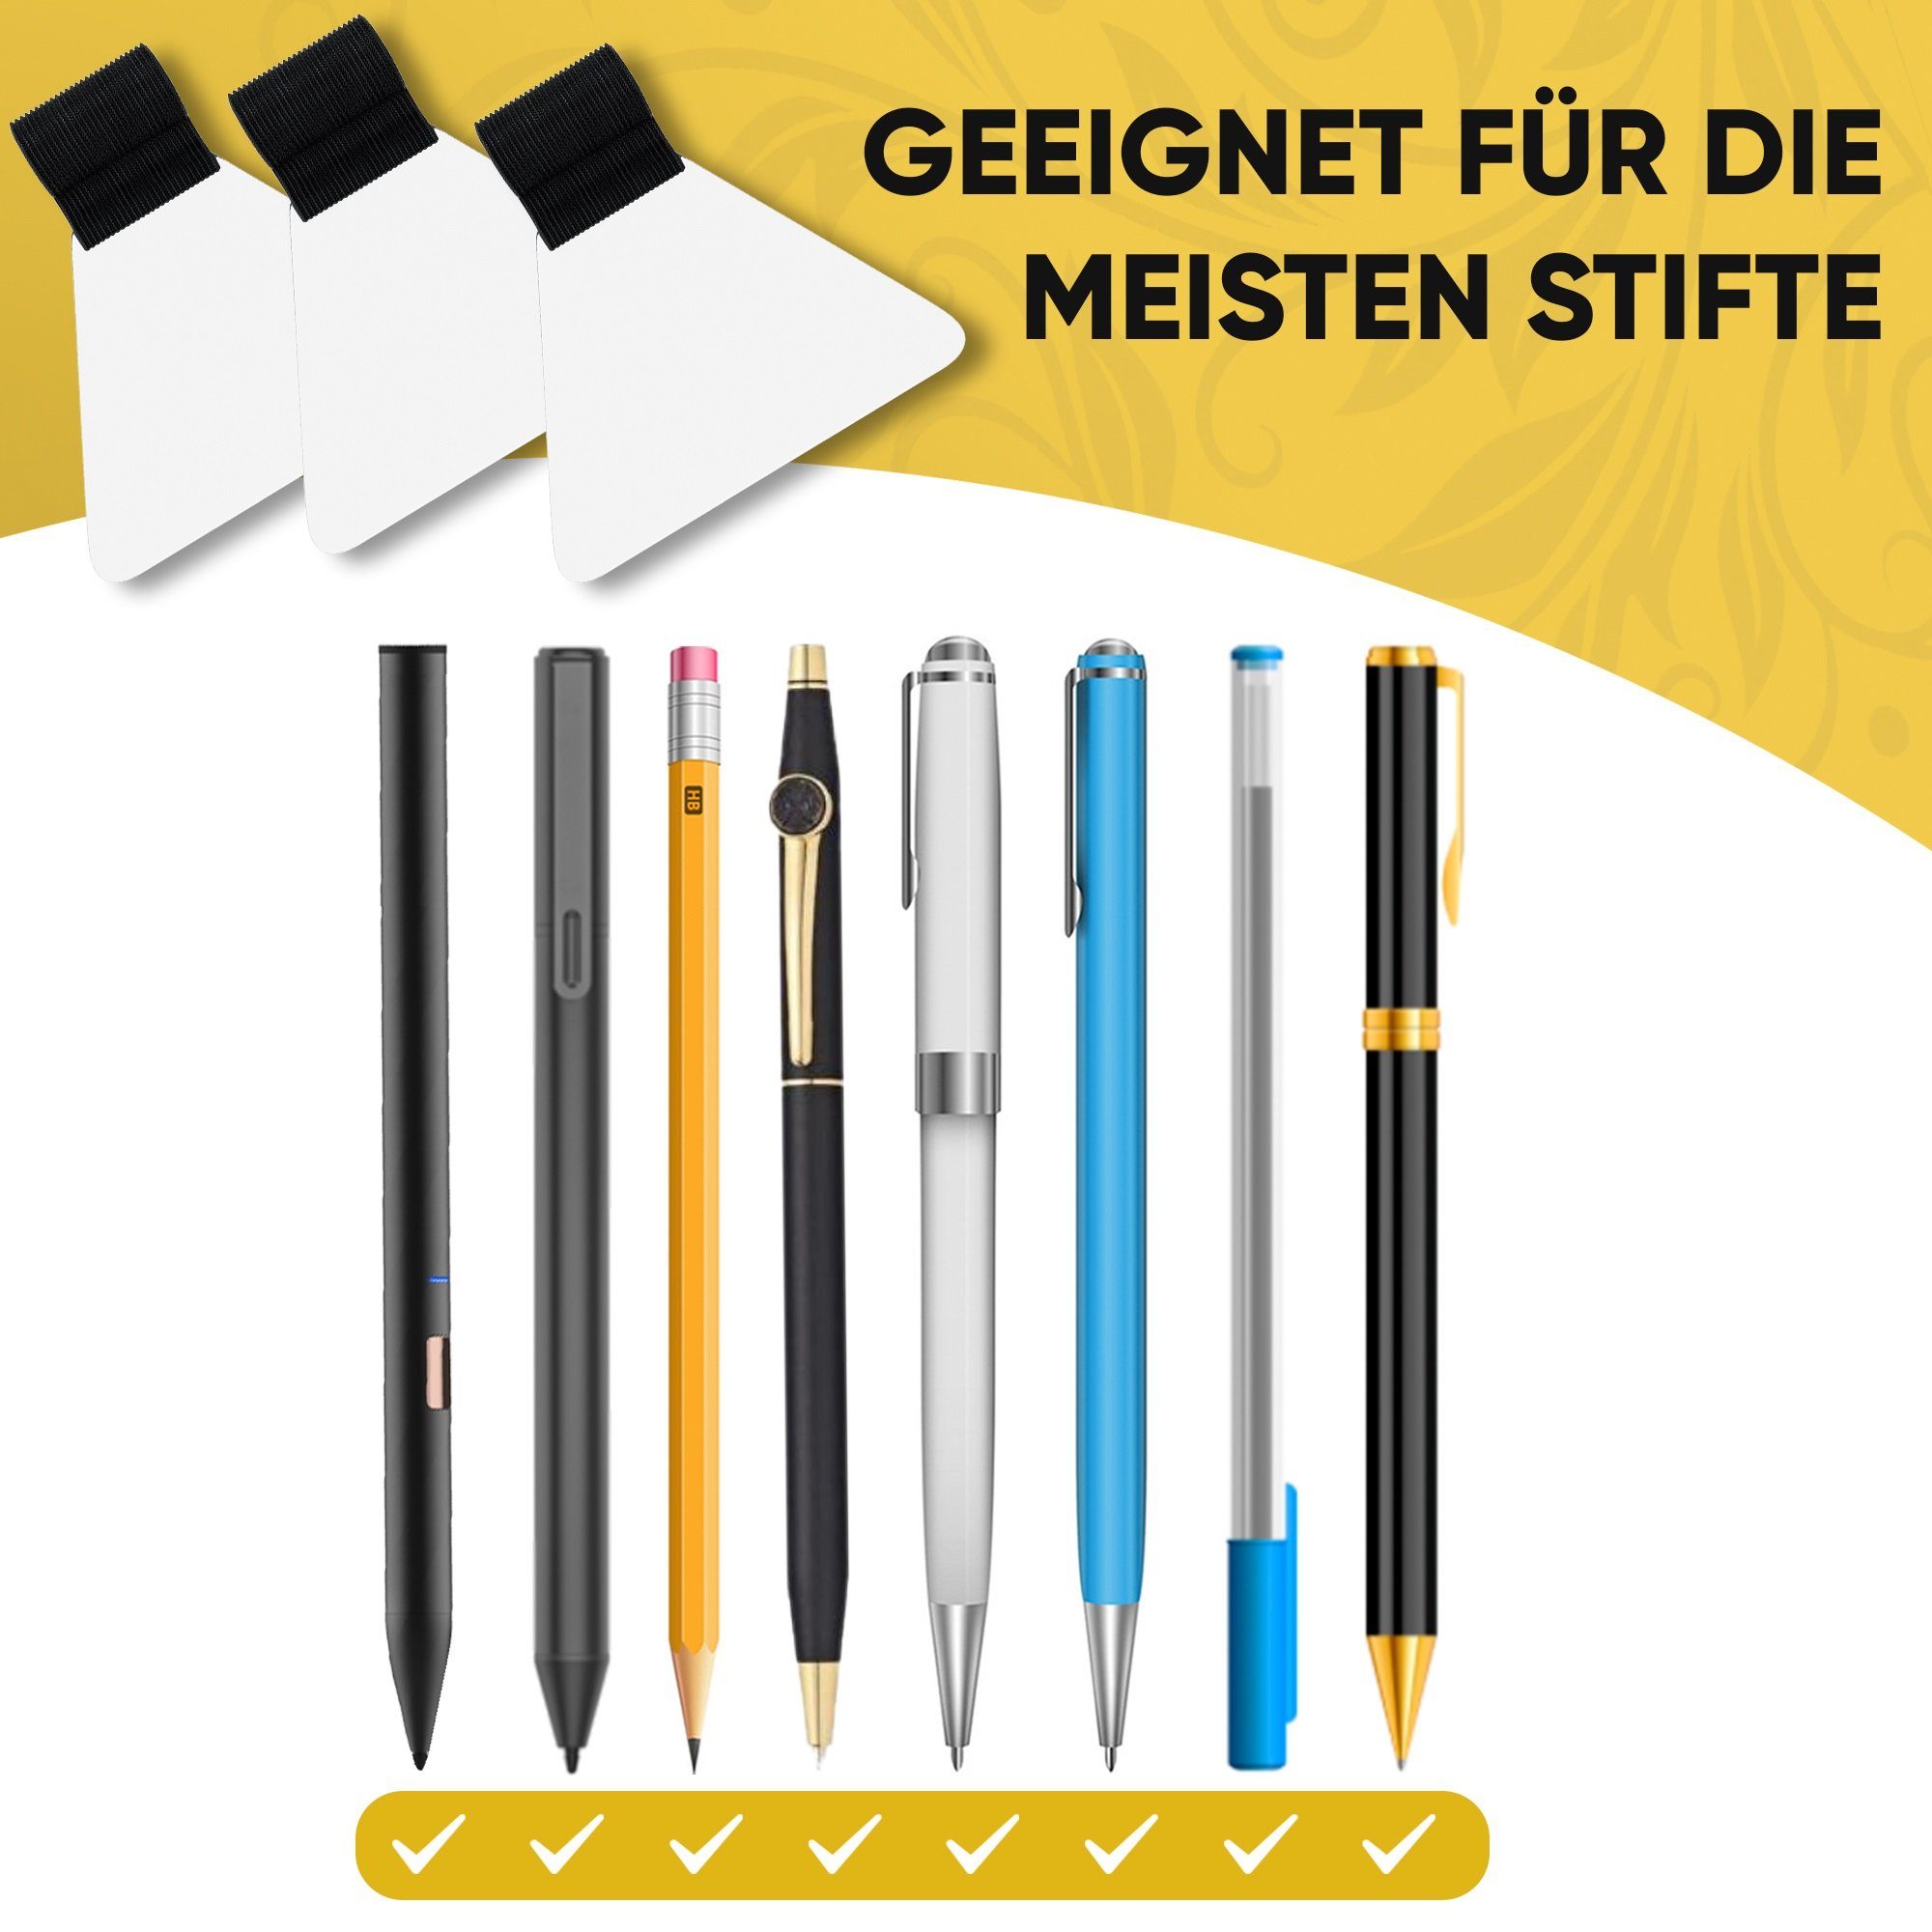 Pen-Loop alle Stiftarten Stifthalter, Notizbuch für Stiftehalter, LifeDesign Bücher & selbstklebend 9er Set,